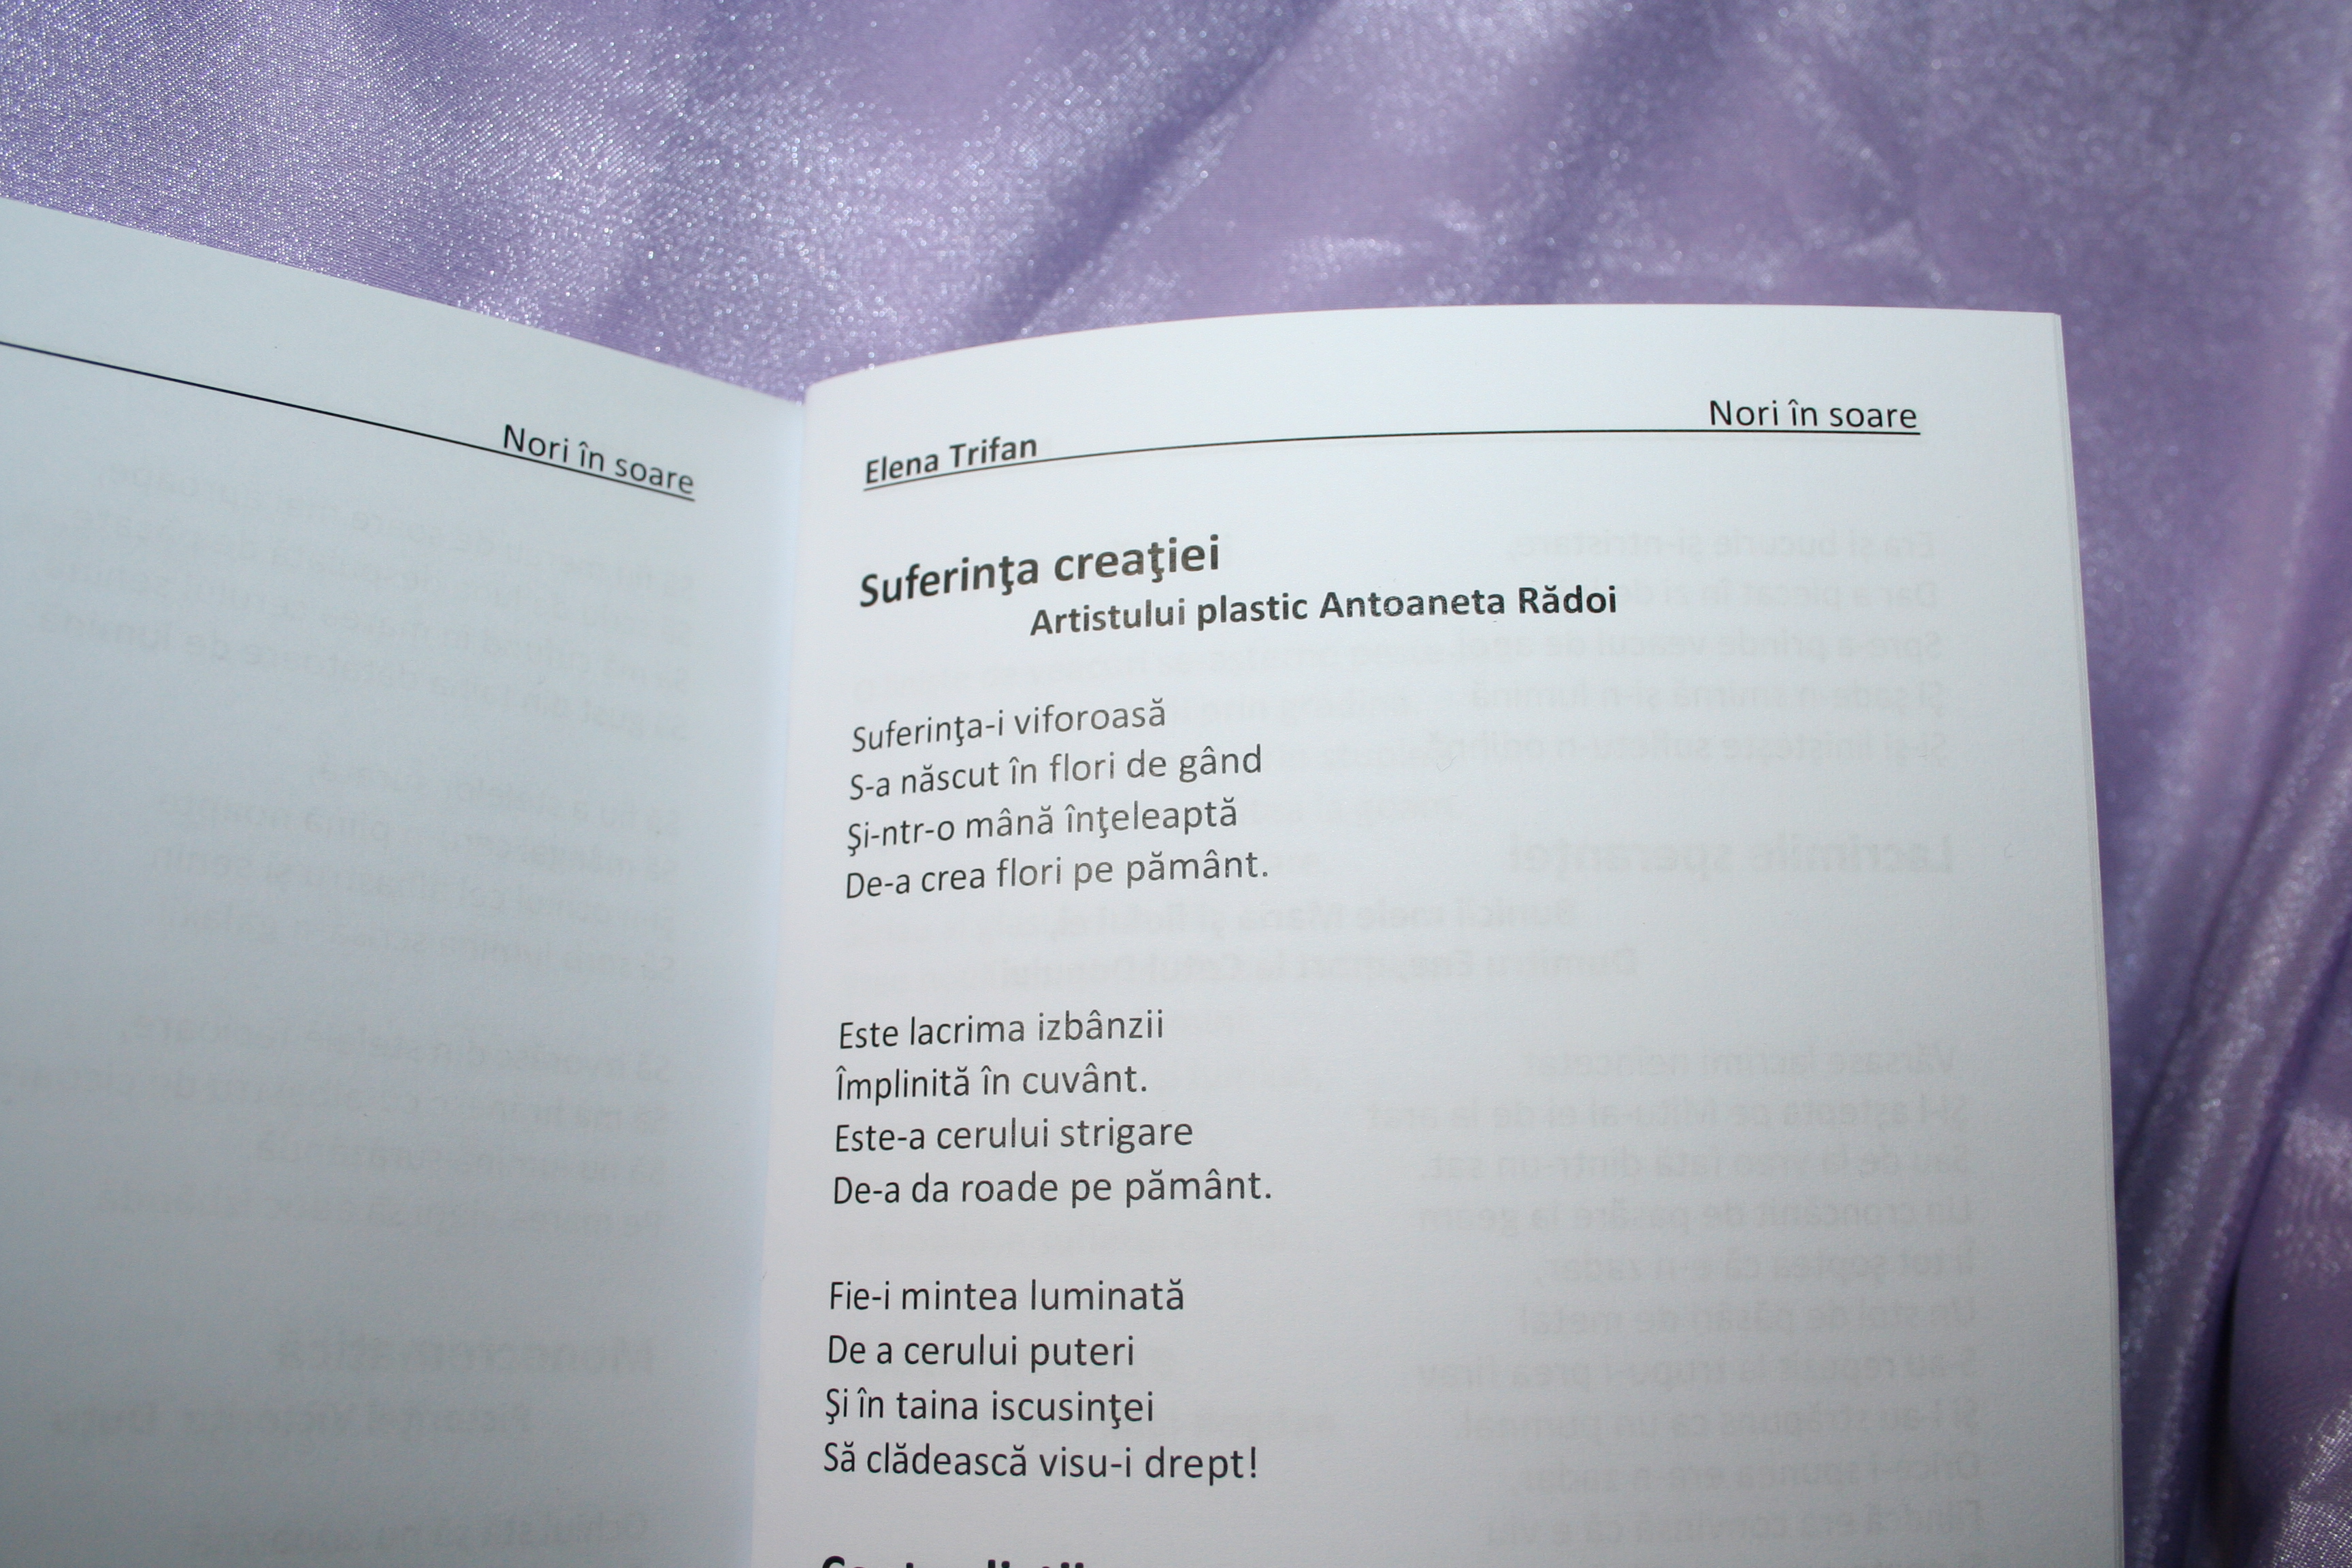 Often spoken Spicy Back, back, back (part Dedicatie poetica din partea dnei Elena Trifan -poet | ivanacristescu